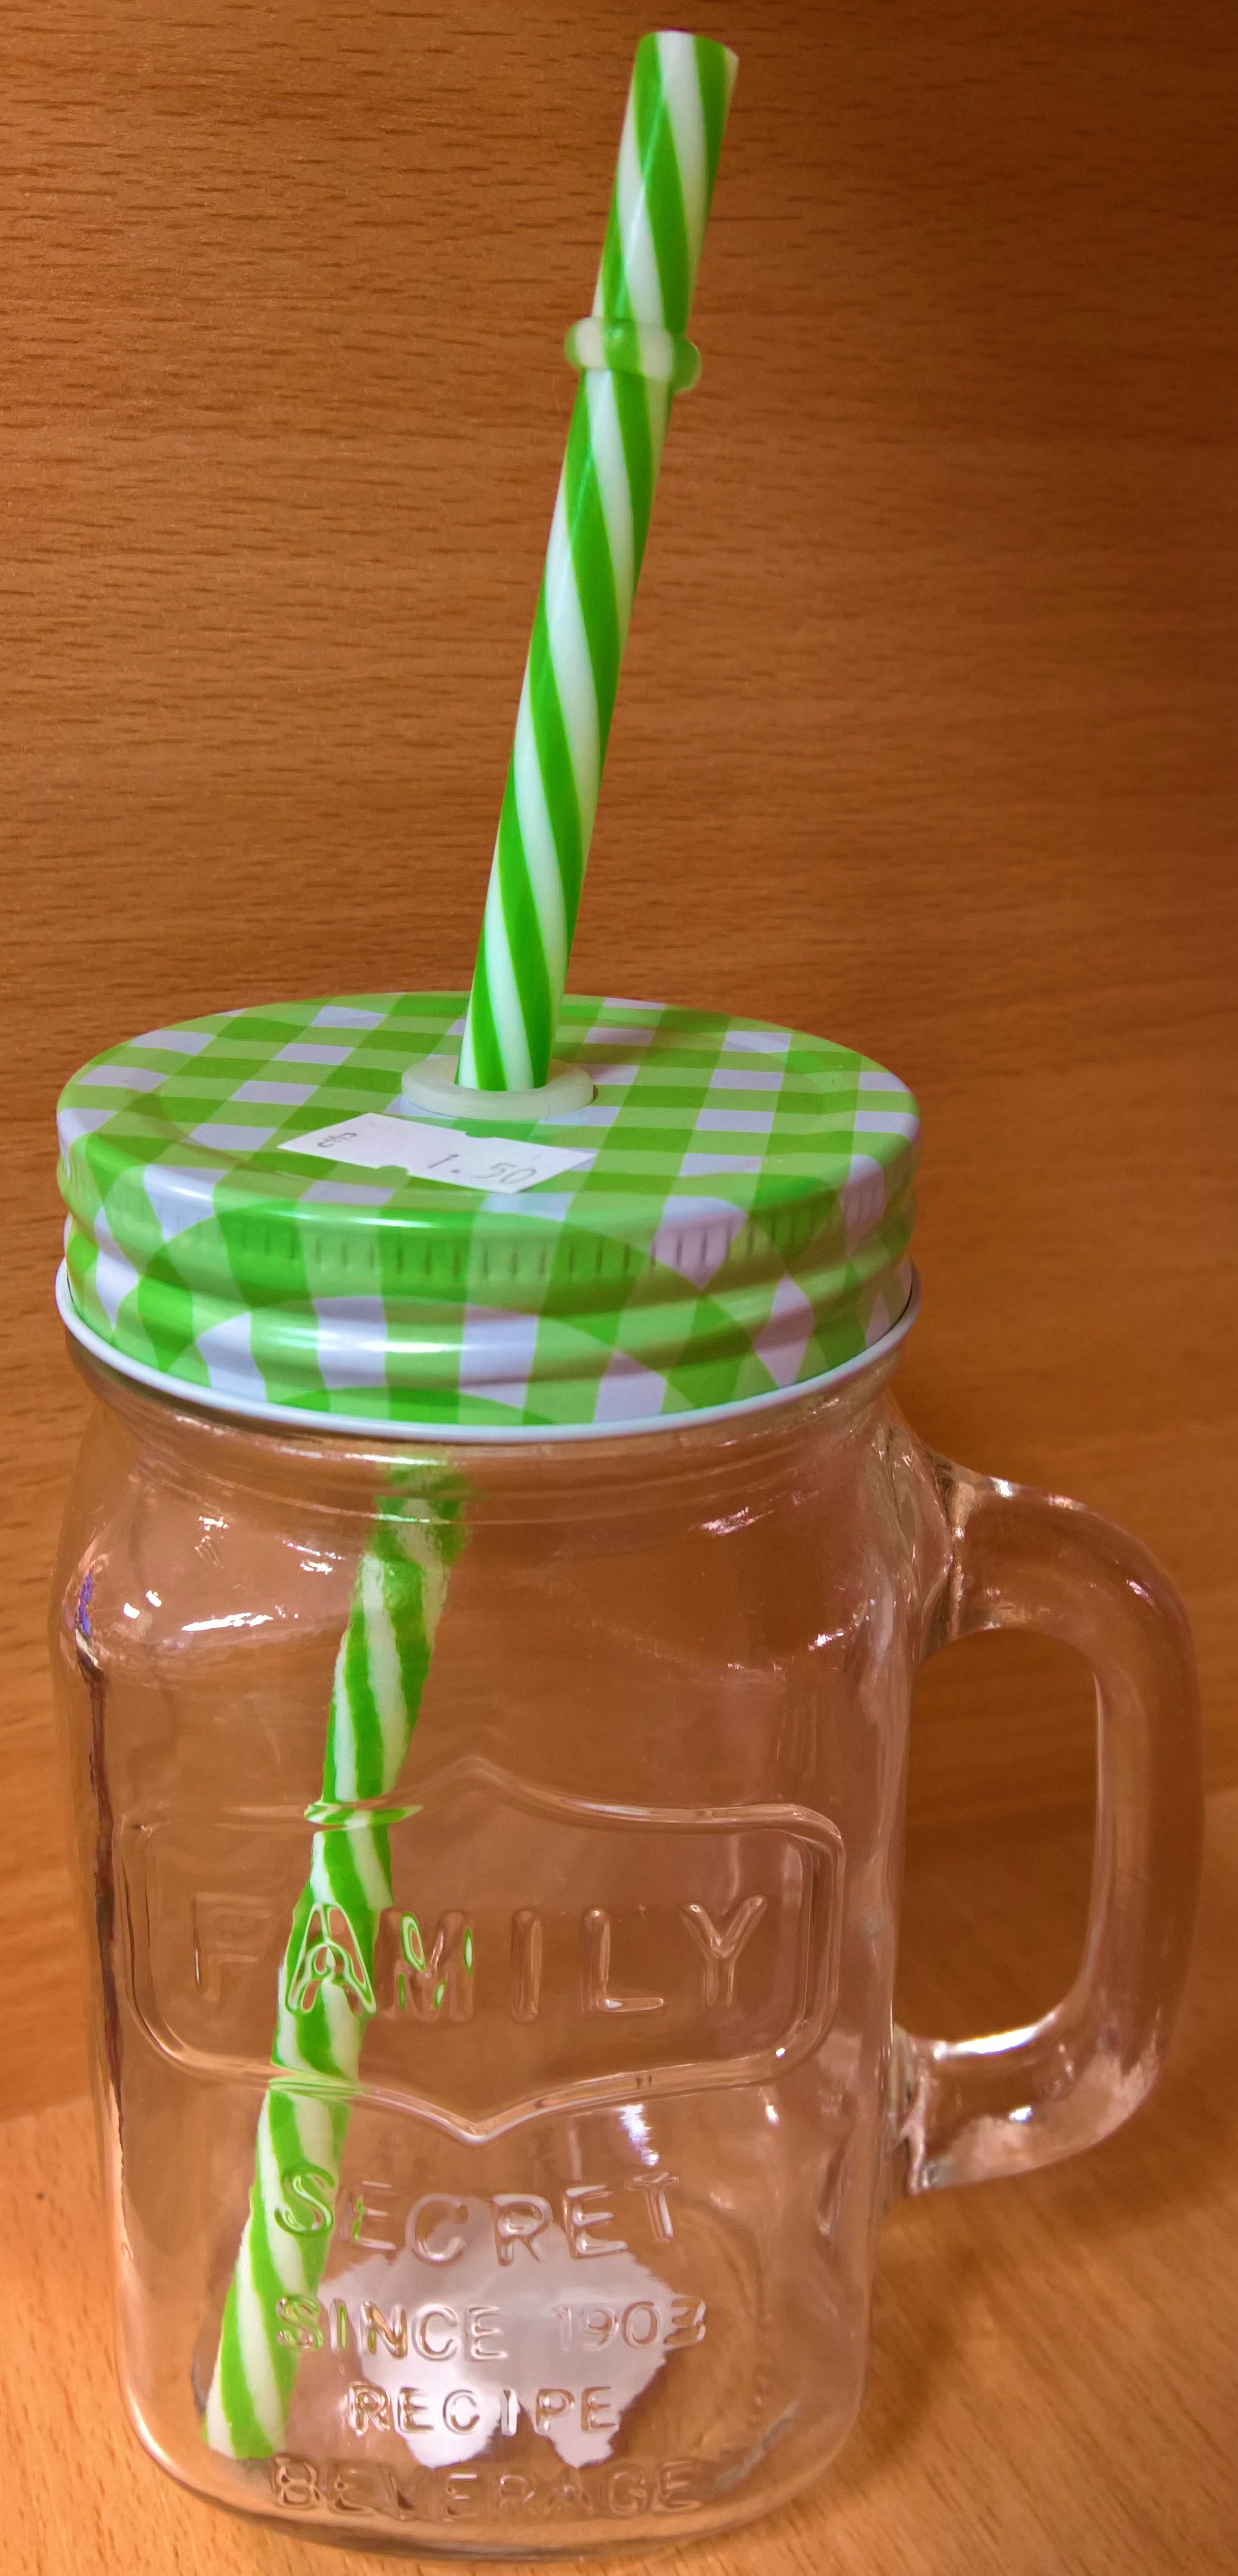 Party pohár so slamkou - zelený